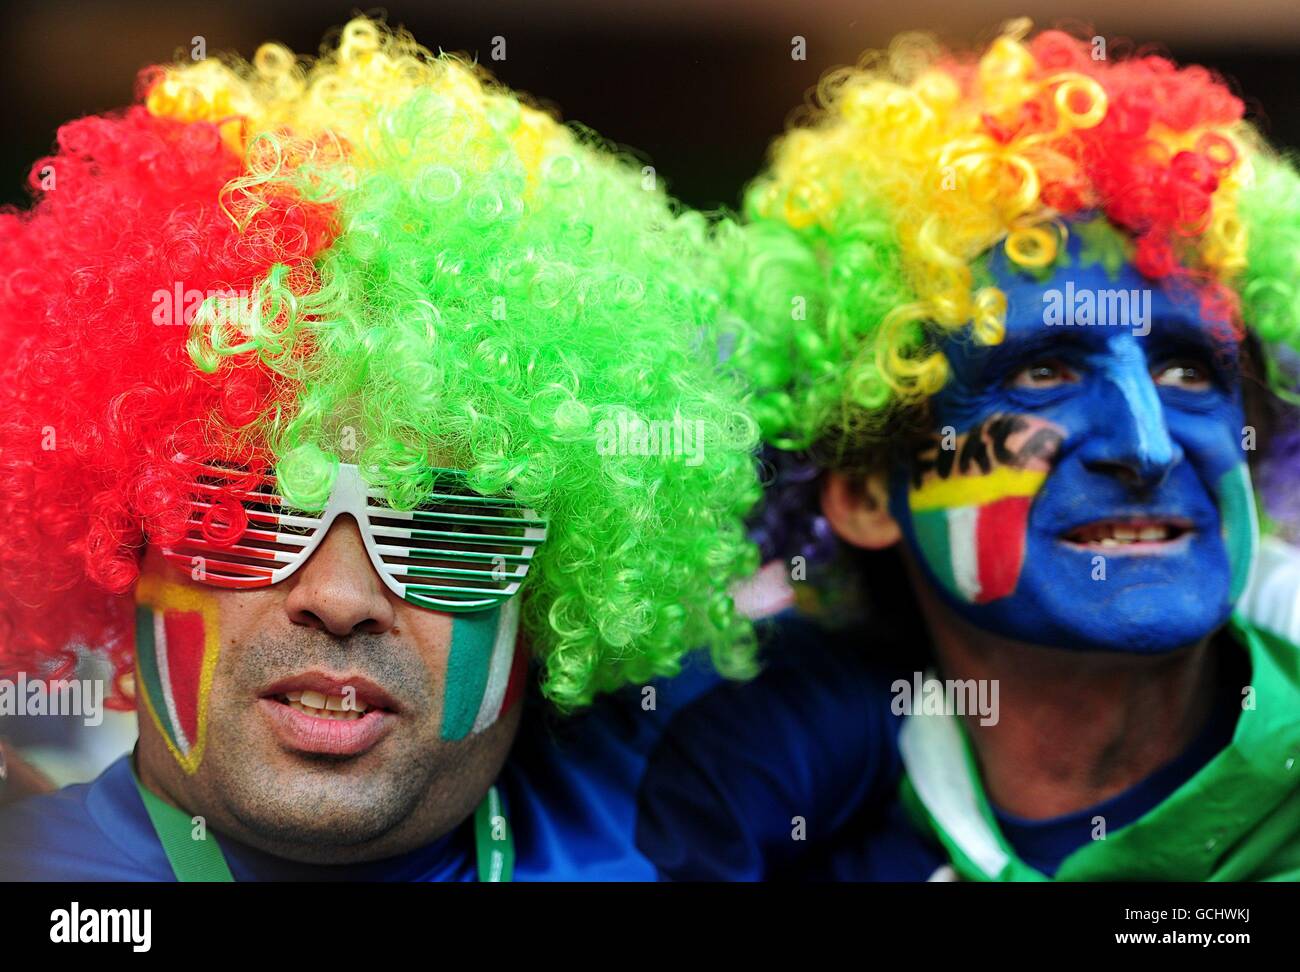 Football - coupe du monde de la FIFA 2010 Afrique du Sud - Groupe F - Italie / Nouvelle-Zélande - Stade Mbomela. Les fans italiens montrent leur soutien dans les stands Banque D'Images